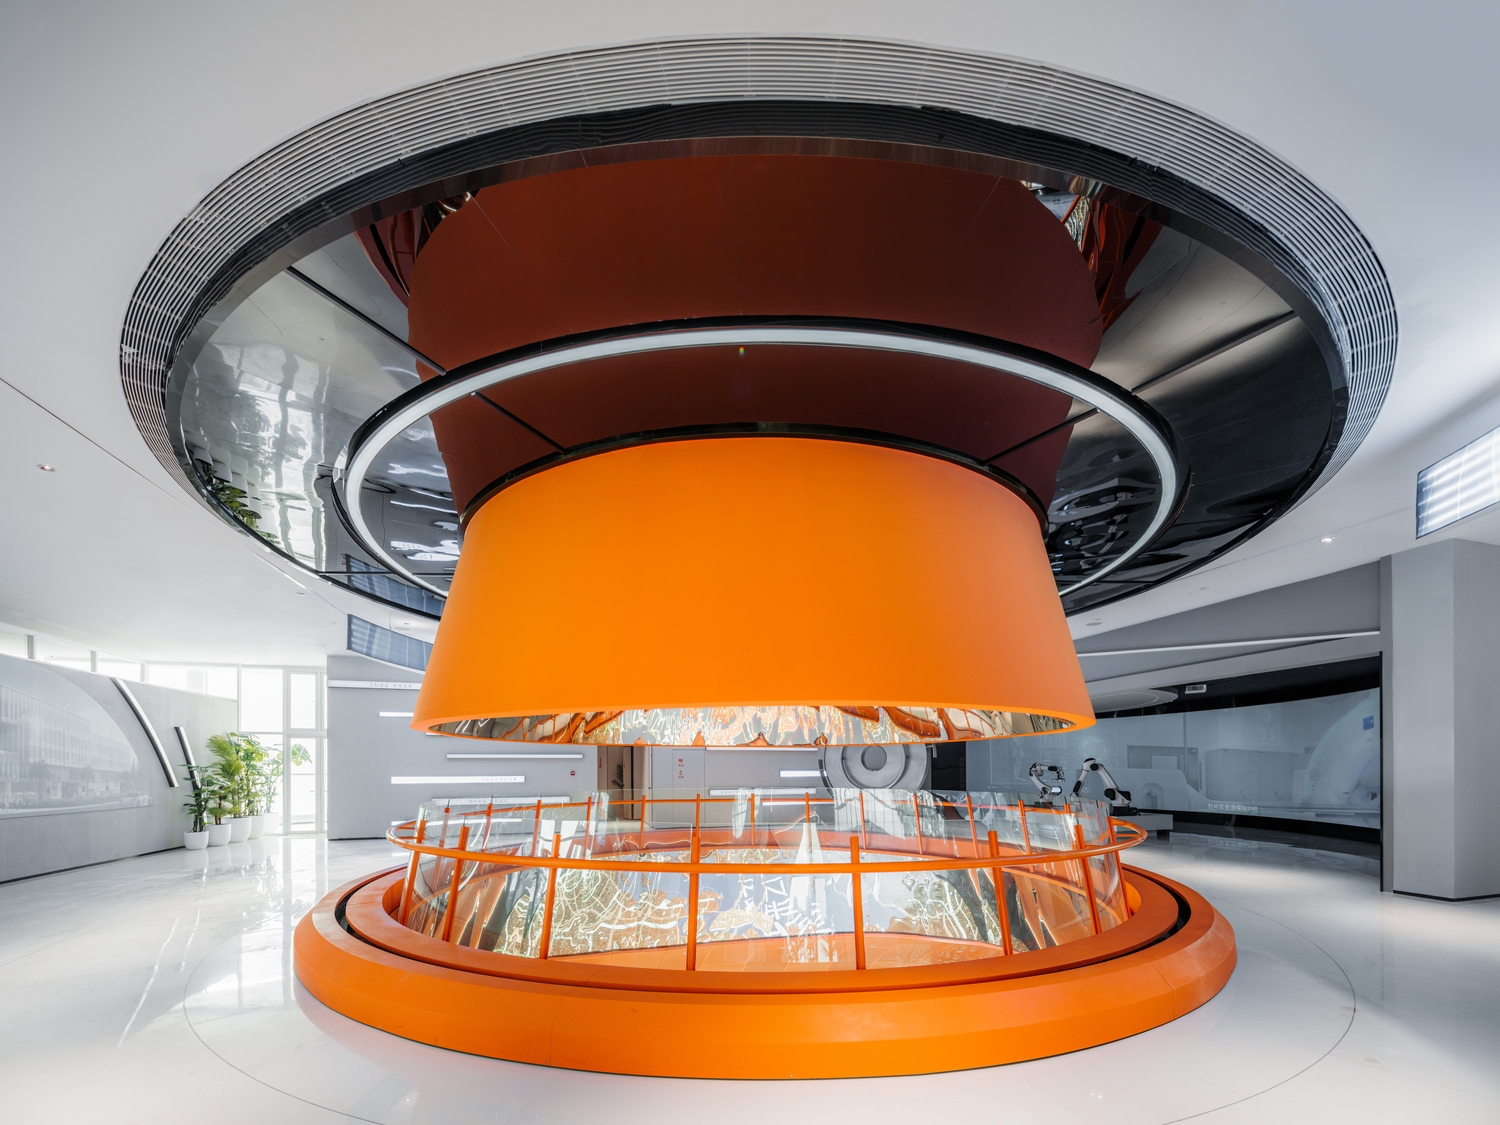 展览馆内特别以一座橘红色的圆形天井打破上下楼层的分界。